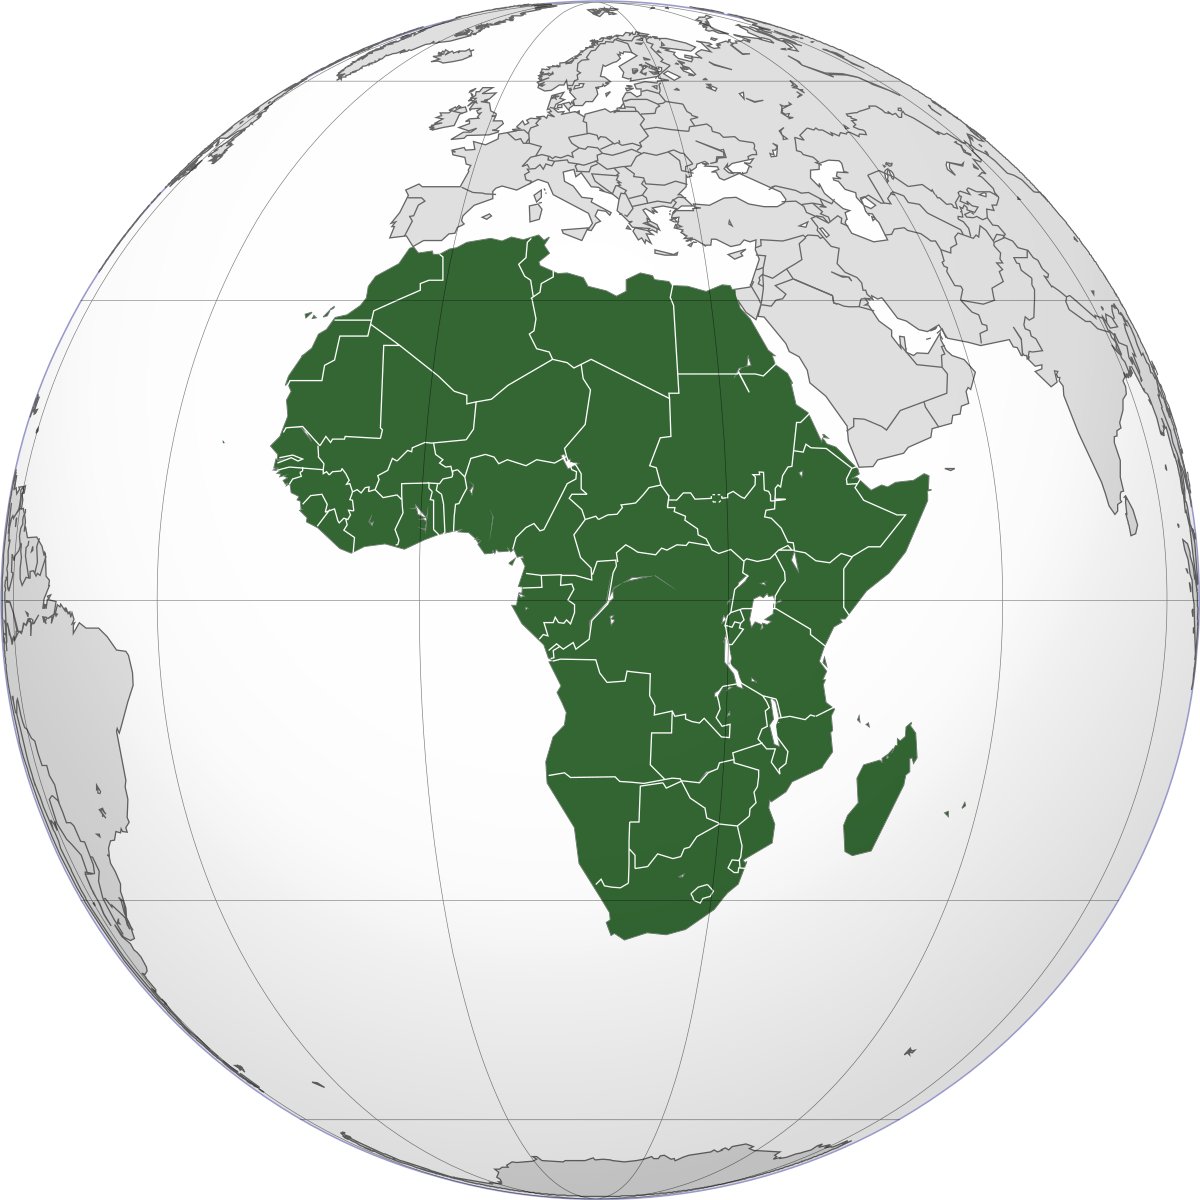 Covid, guerre, inégalités: l'Afrique vit sans assurance. Editorial de Marco Impagliazzo